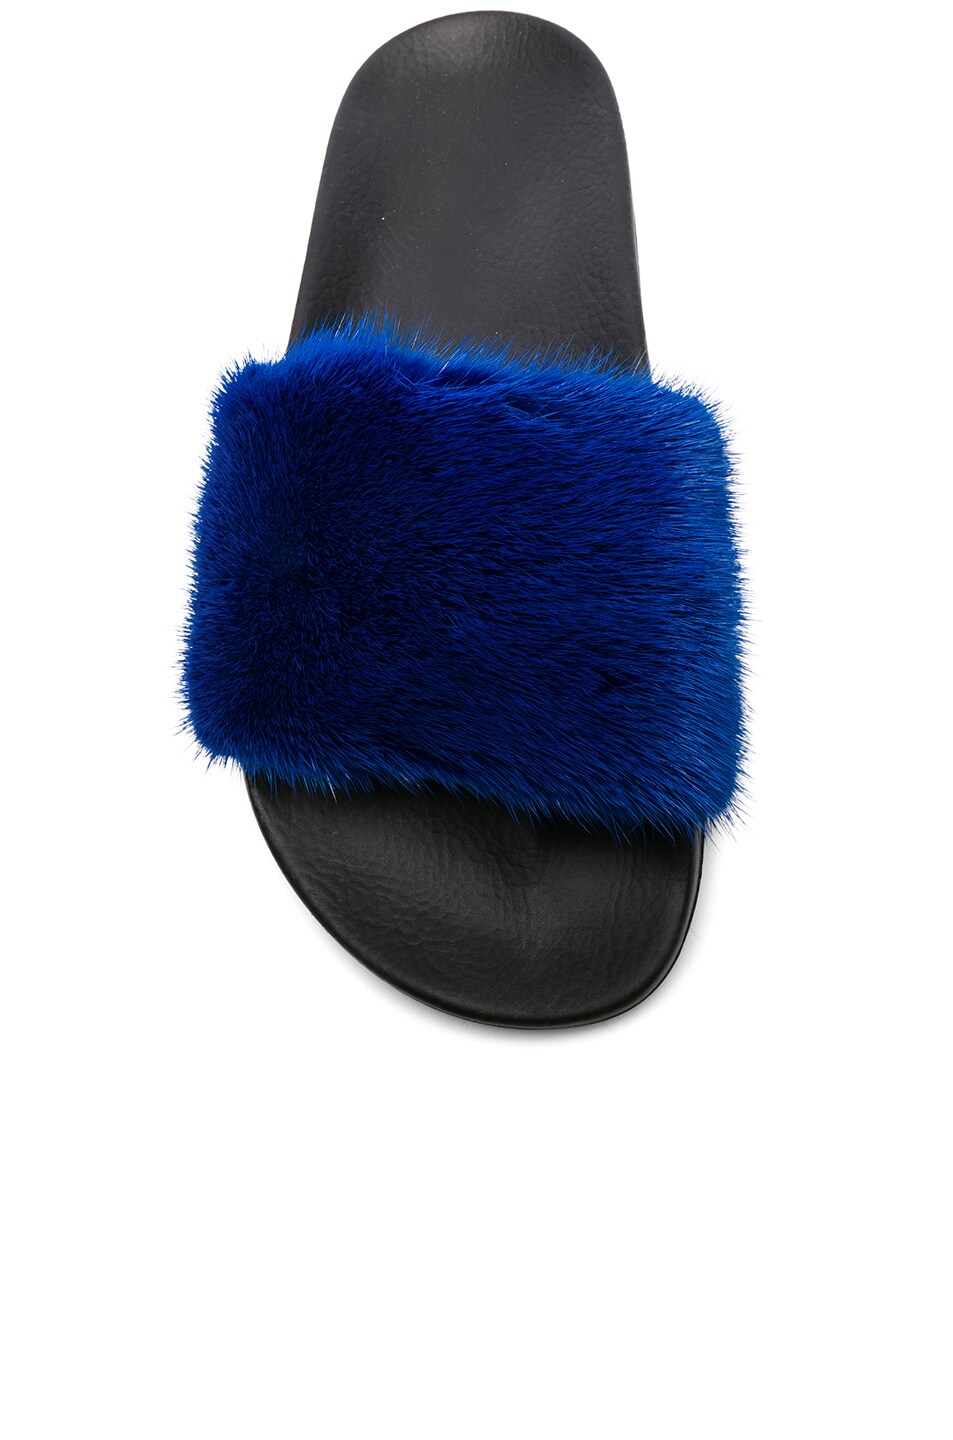 Givenchy Mink Fur Slides in Electric Blue | FWRD